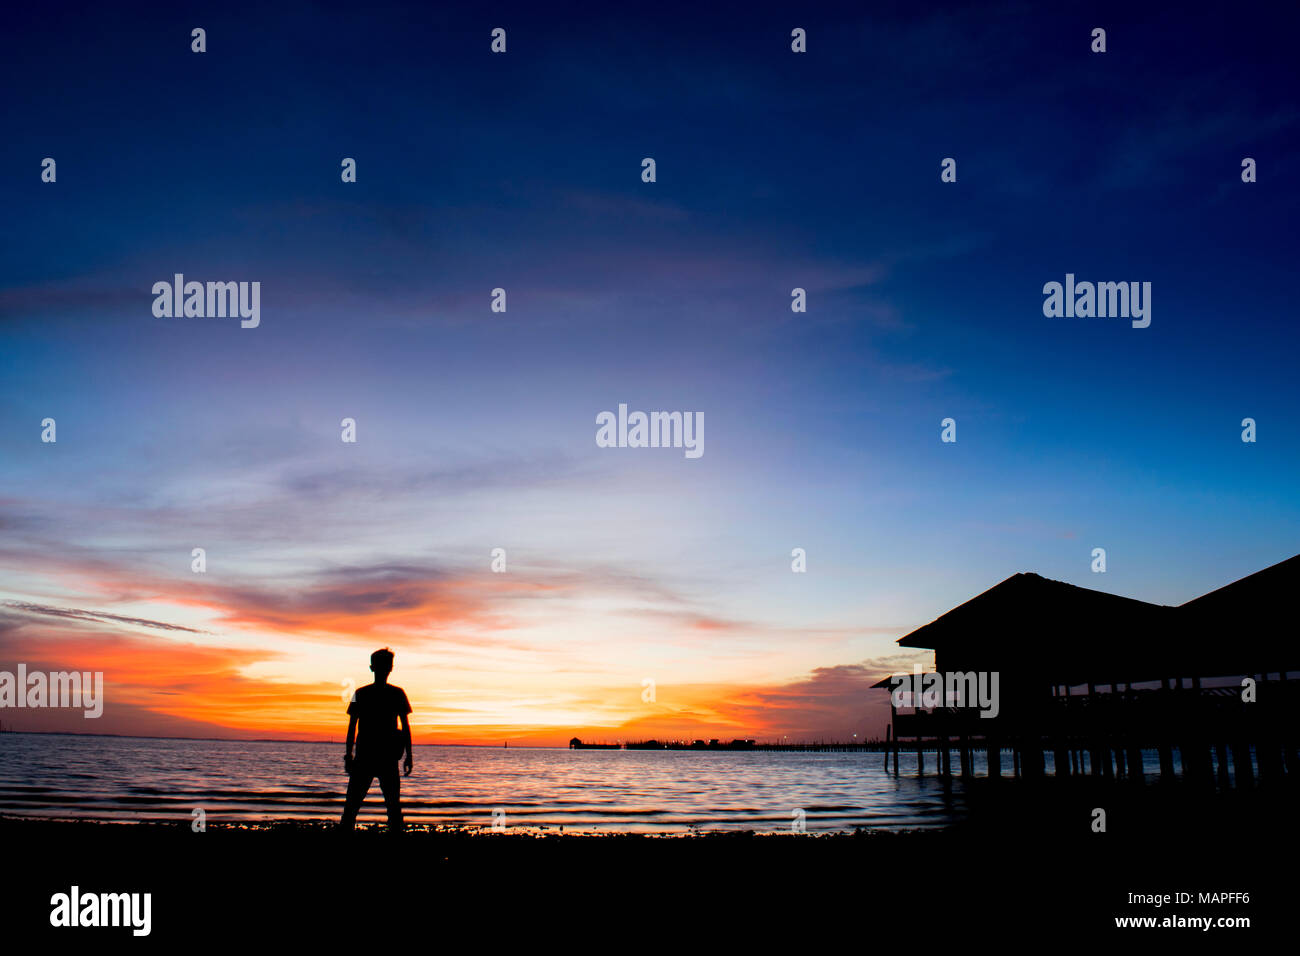 Silueta hombre en la playa contra el ocaso - La isla de Bintan, Indonesia Foto de stock